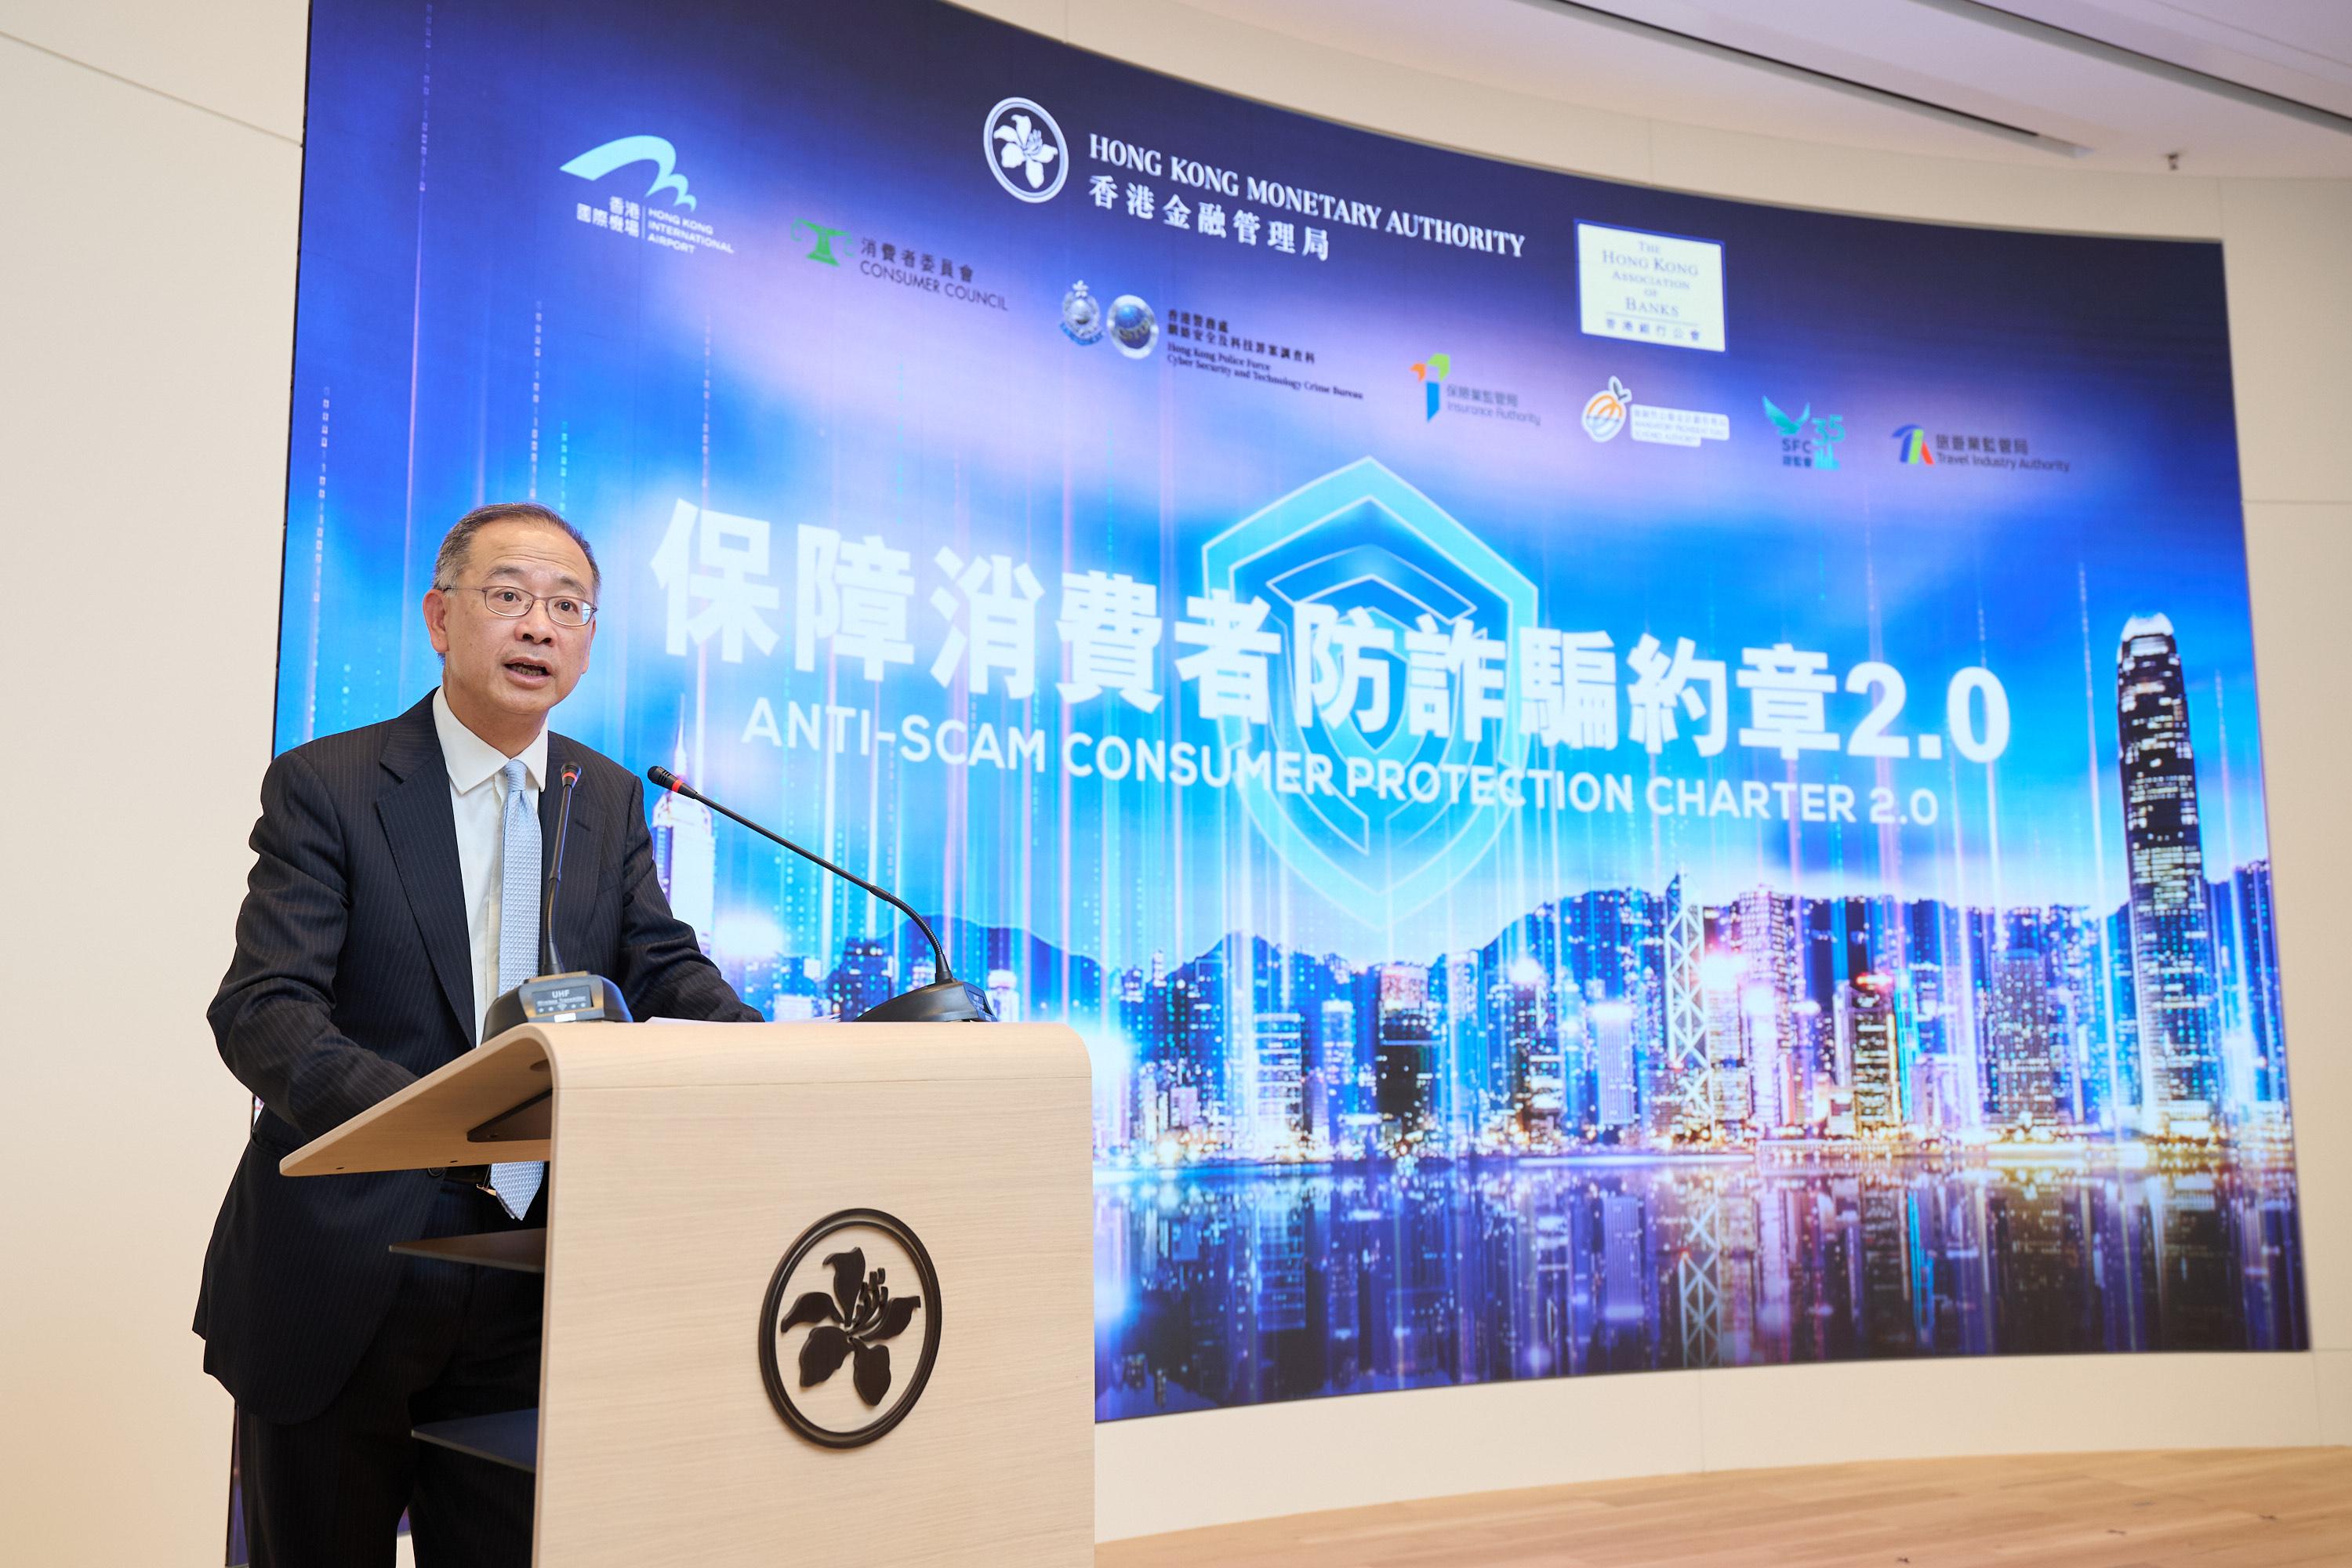 香港金融管理局總裁余偉文於《保障消費者防詐騙約章2.0》的活動上致開幕辭，並宣布有更多機構及商戶參與約章。